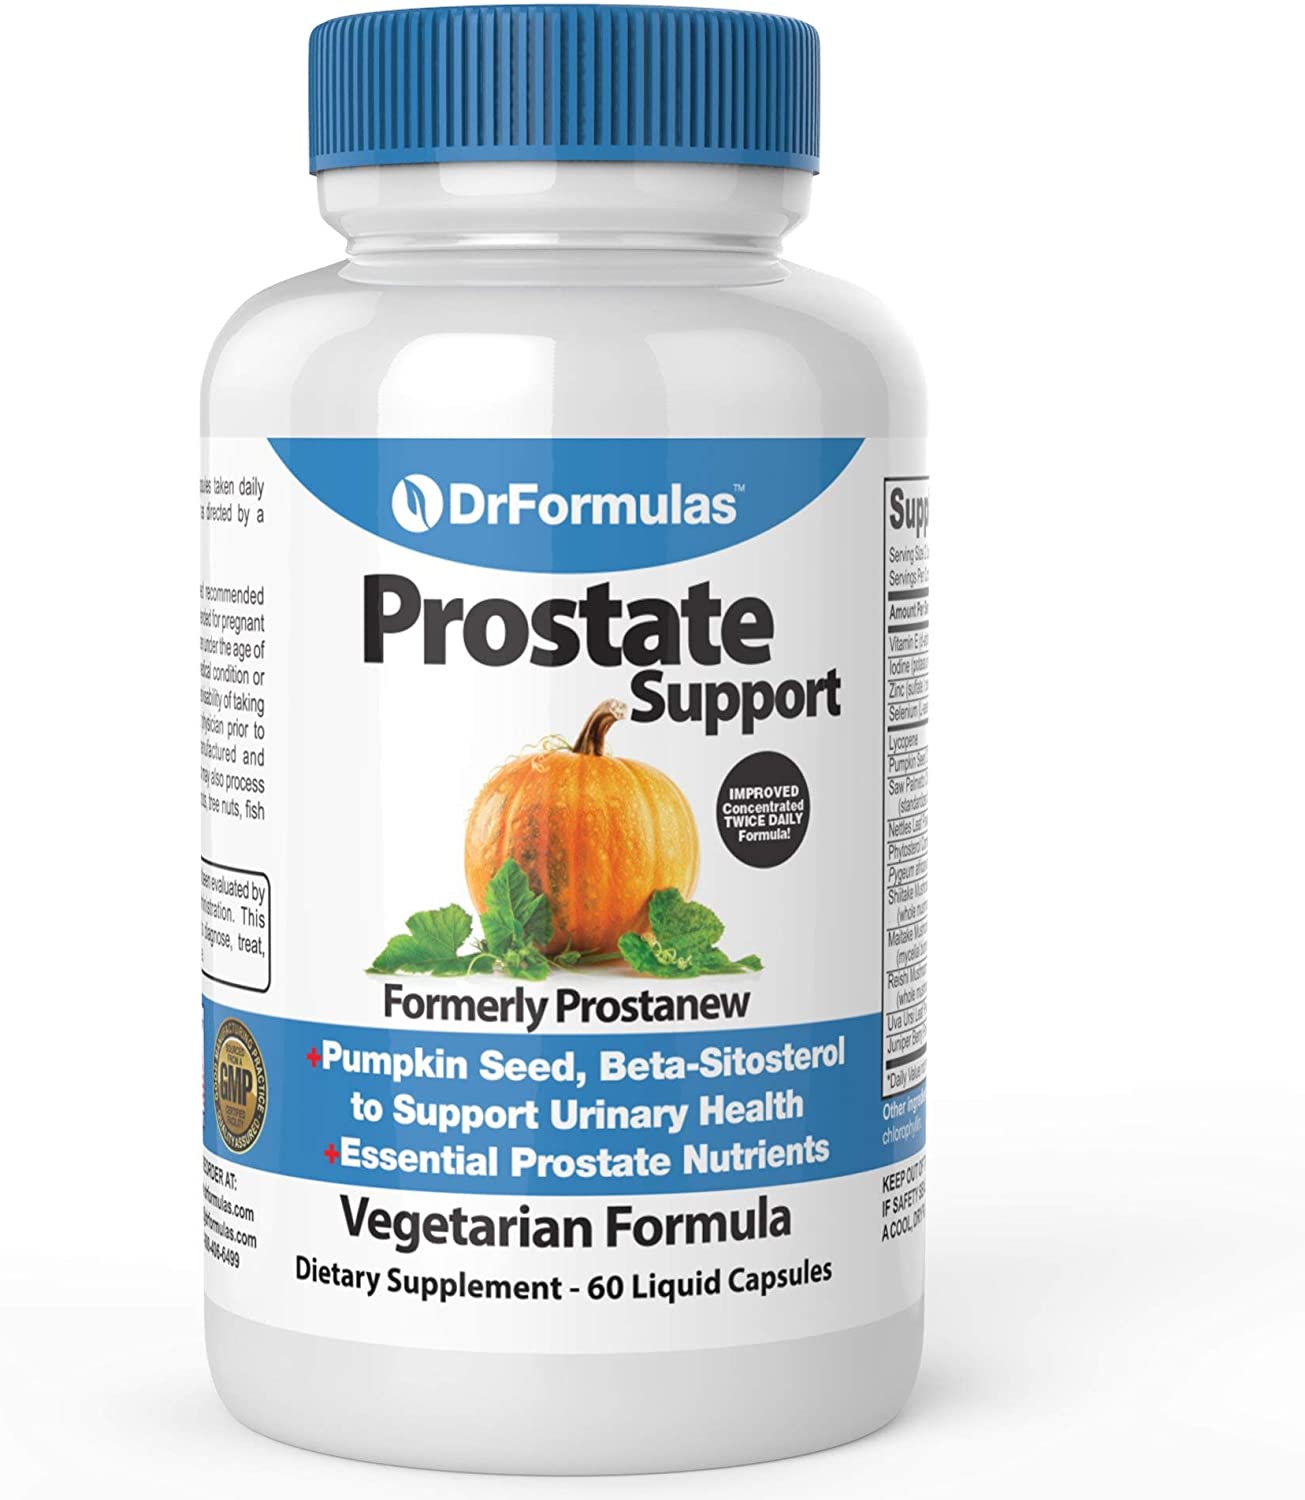 DrFormulas Super Prostate Supplement